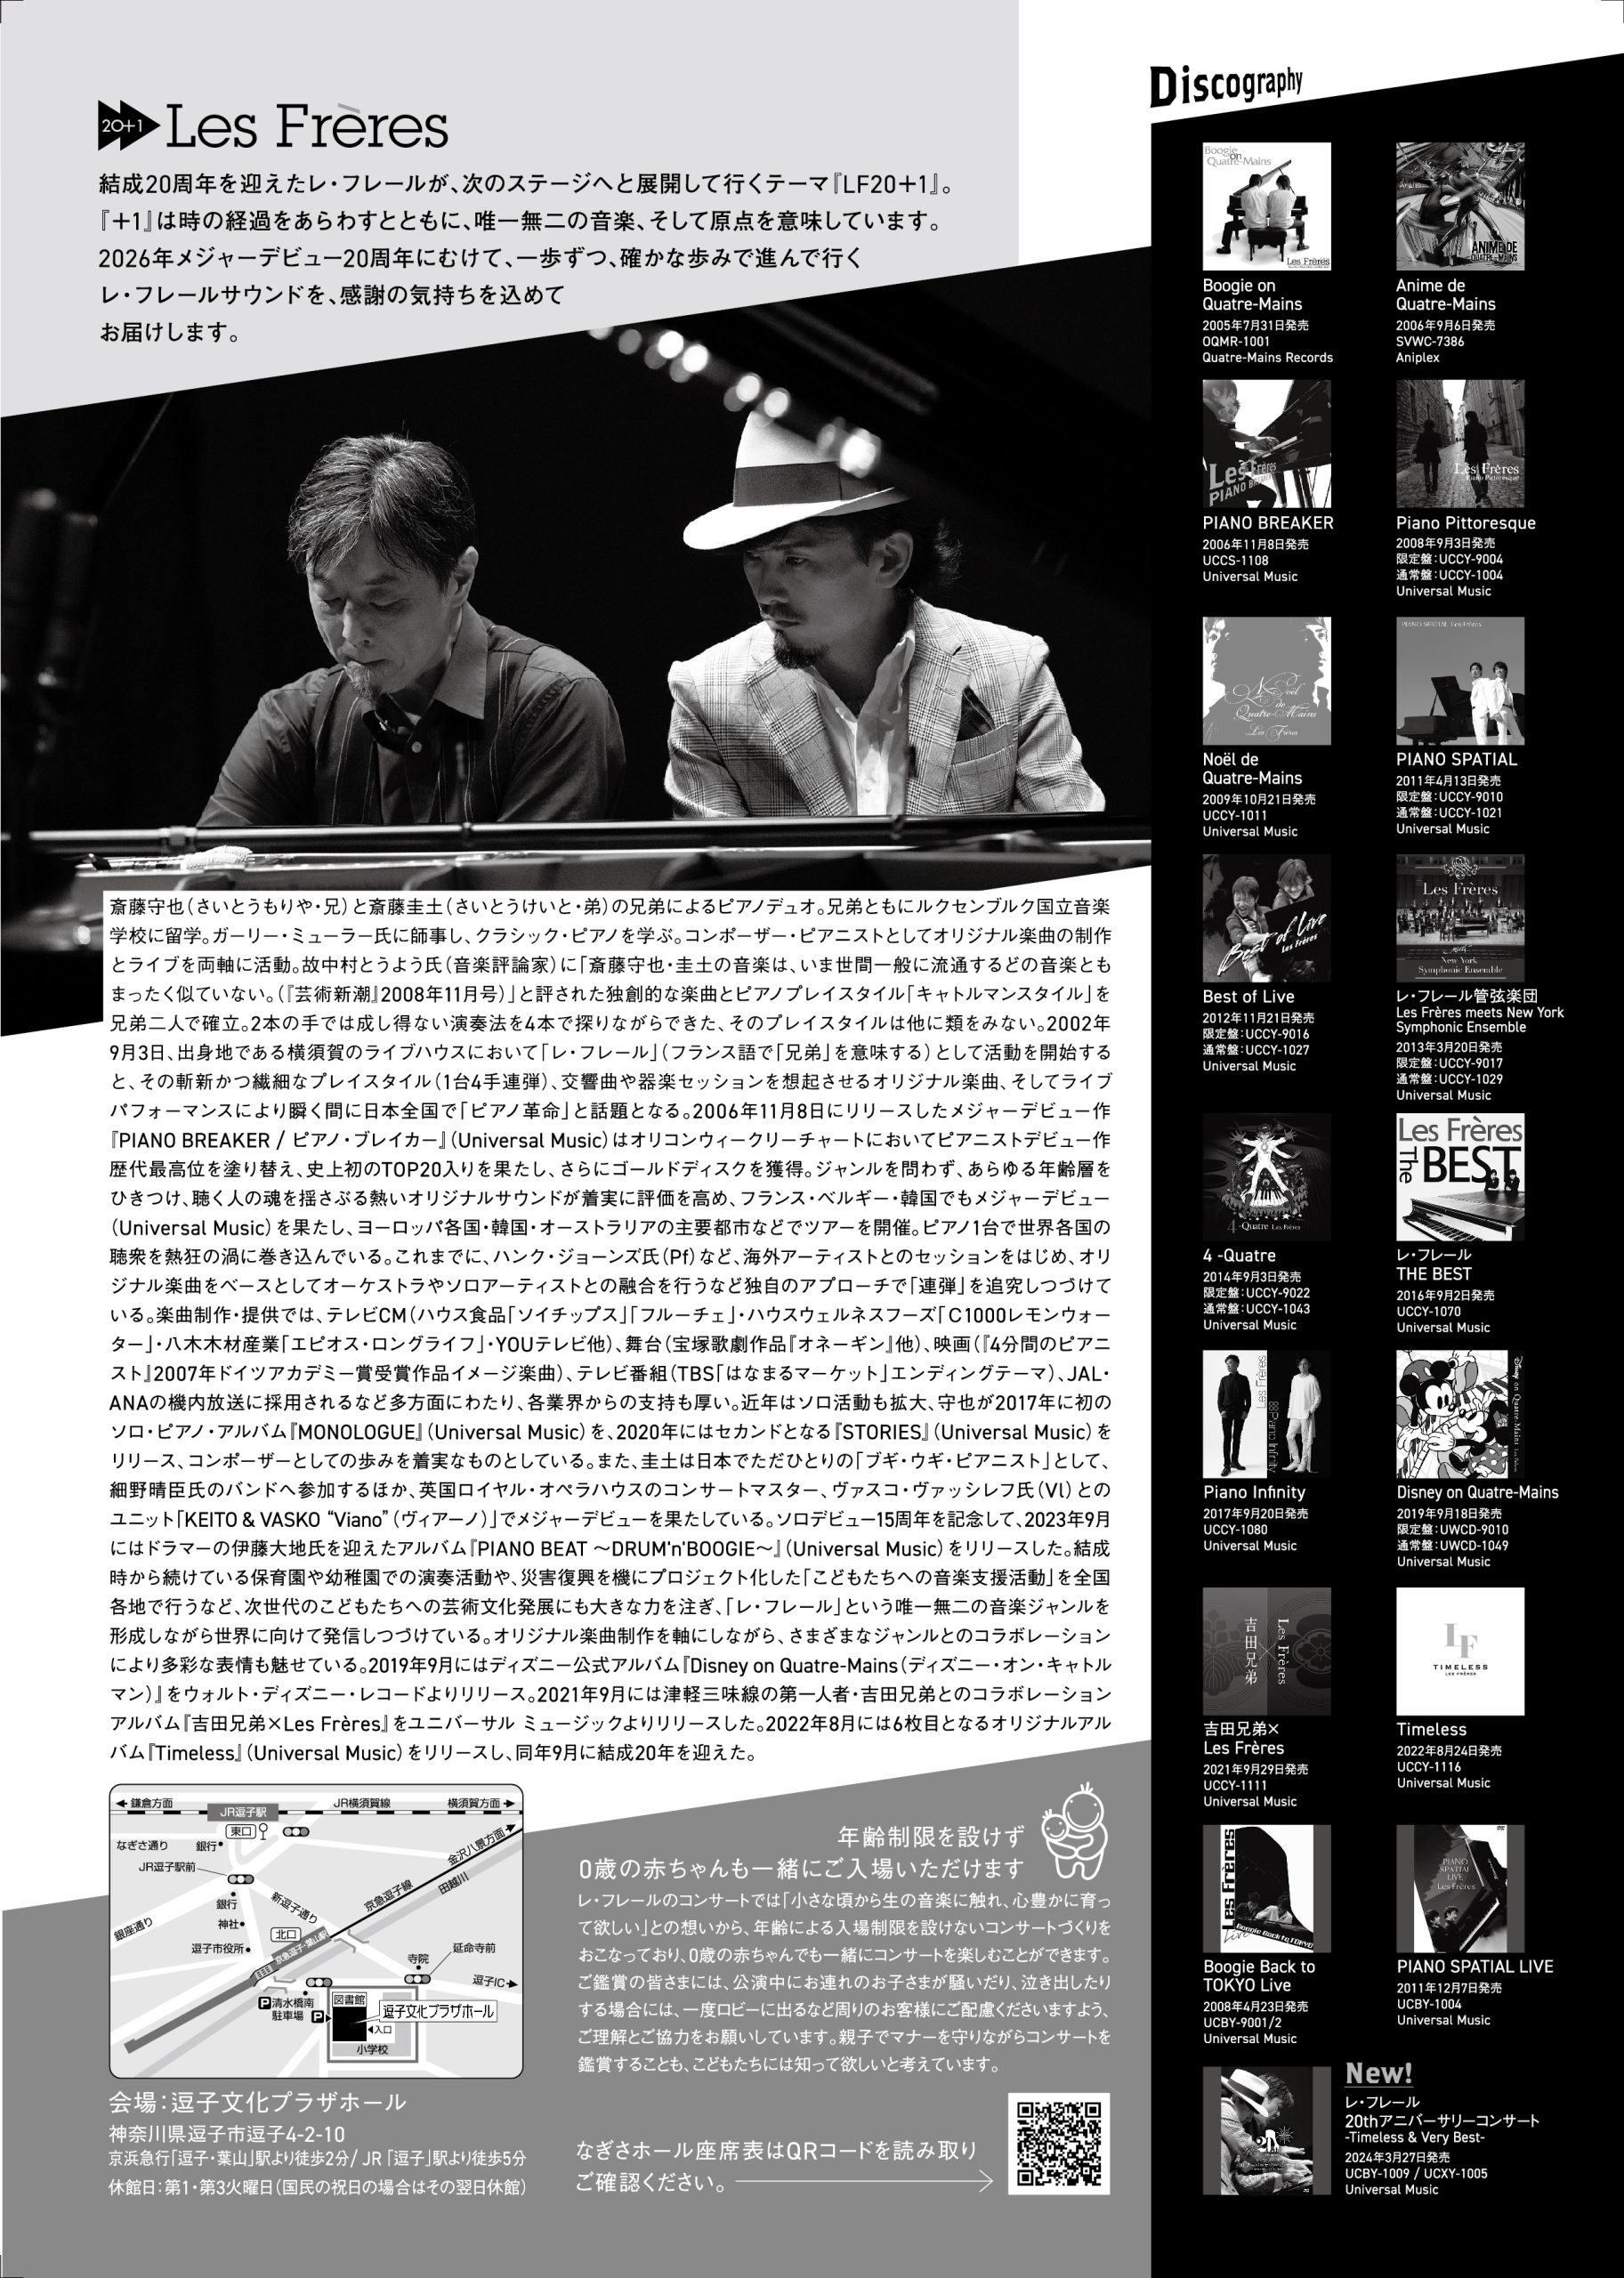 レ・フレール ピアノ連弾コンサート Boogie Back to ZUSHI